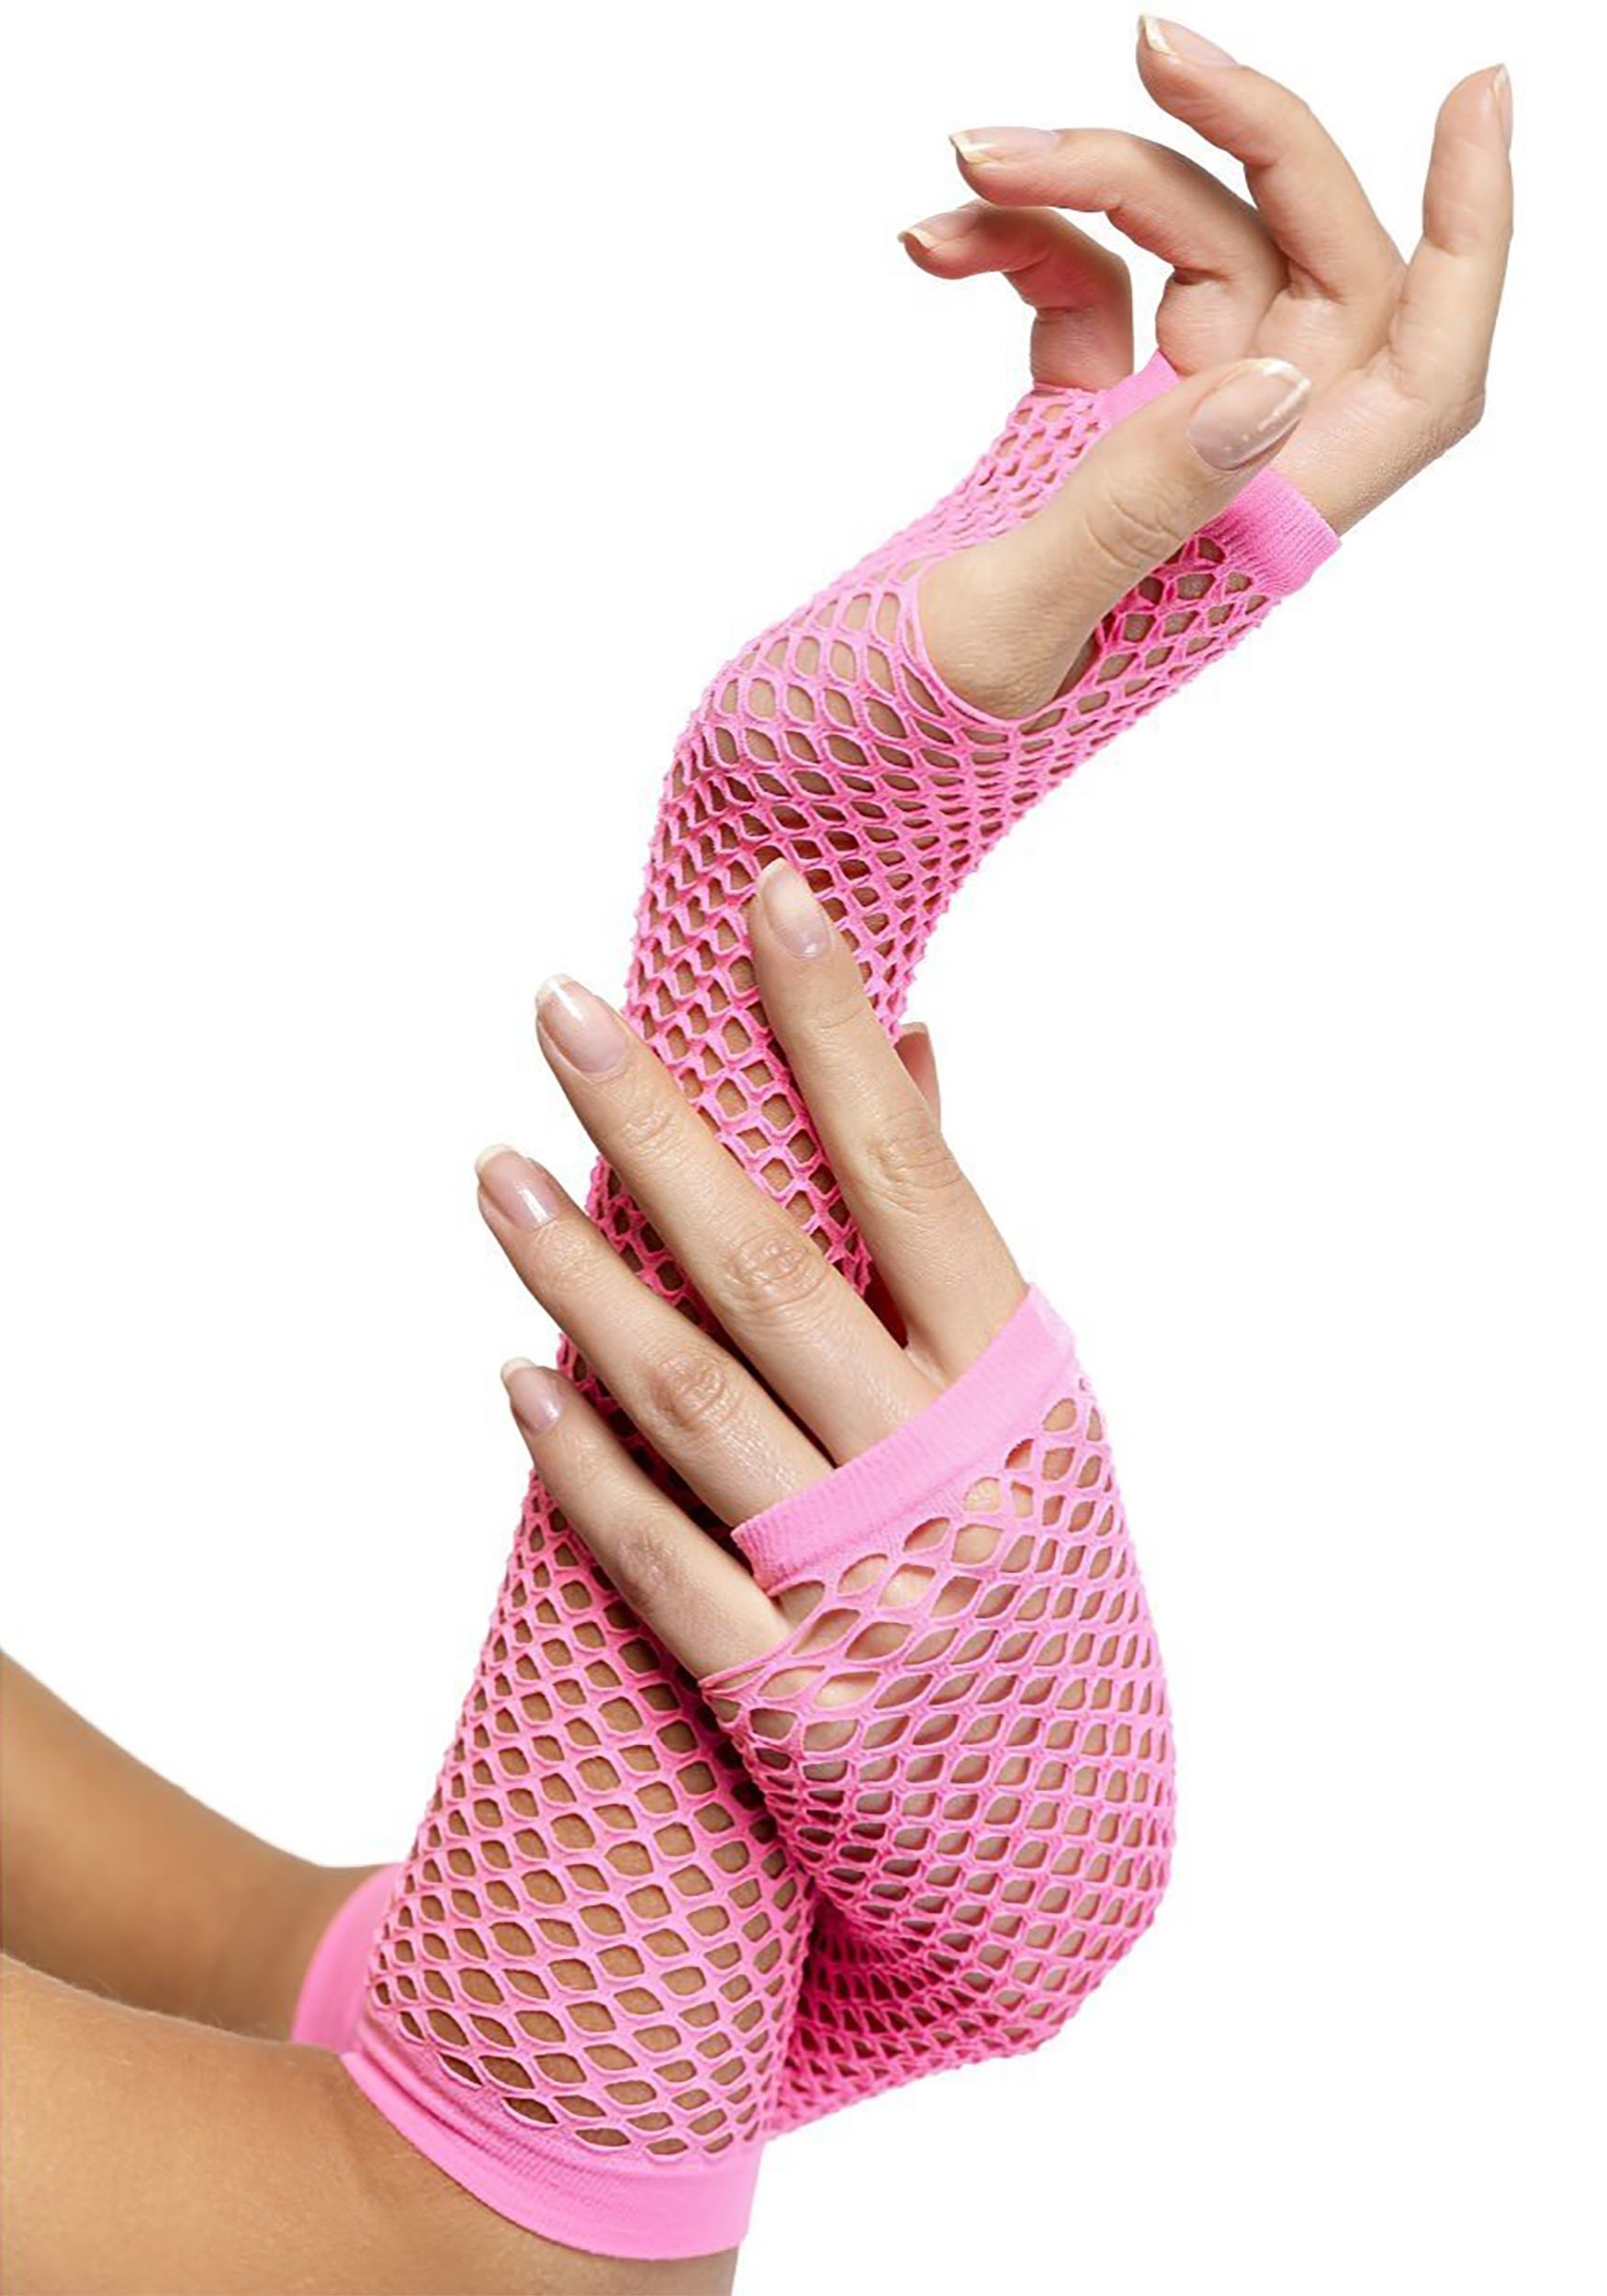 ATHX Women's Fingerless Colorful Fishnet Long Gloves 